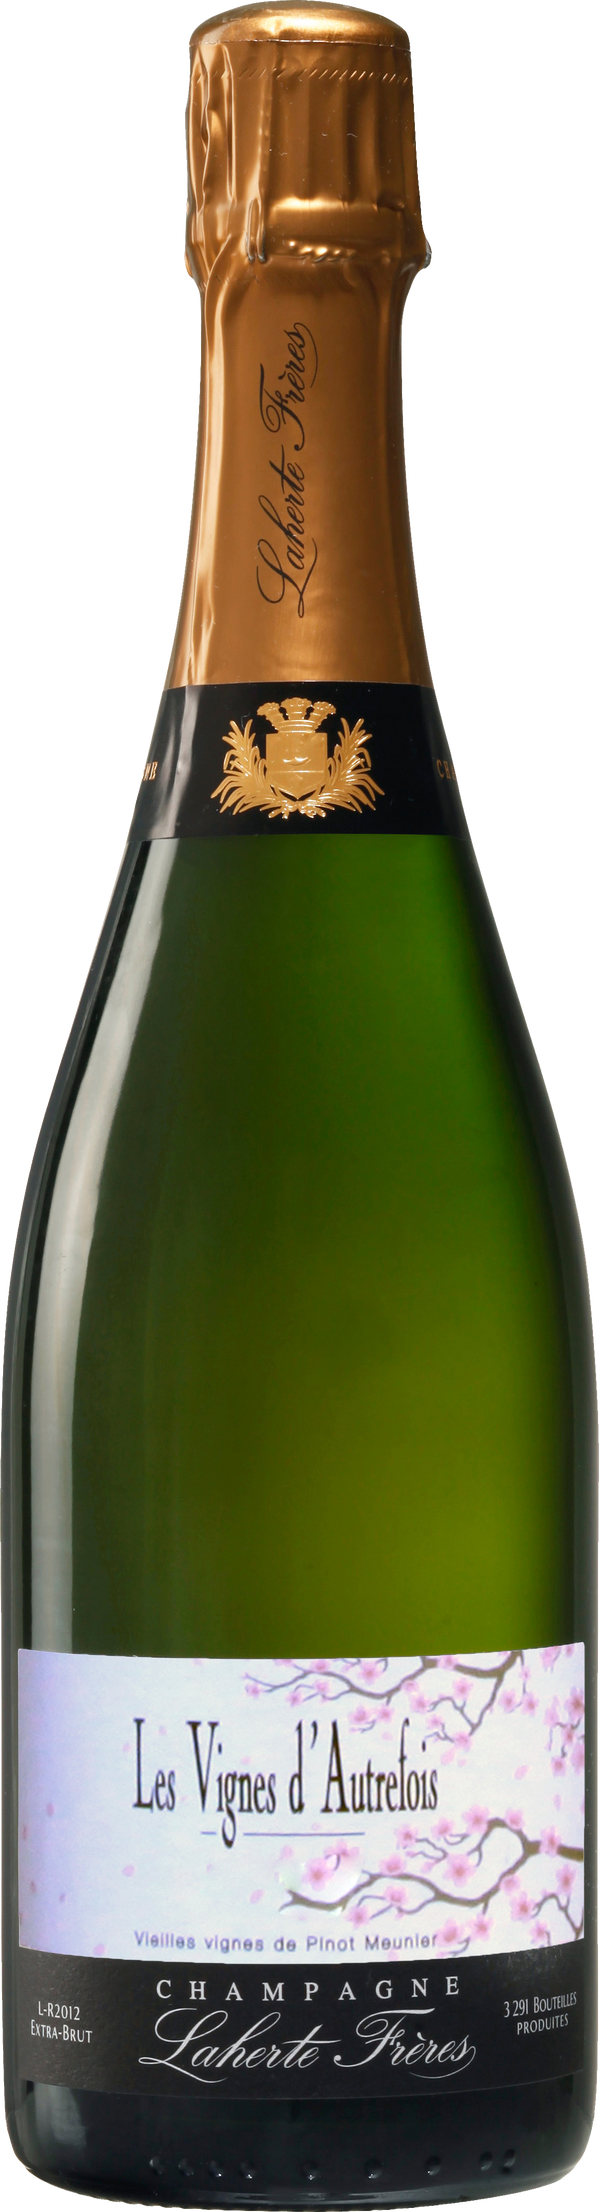 Champagne Laherte Frères Les Vignes d'Autrefois 2016 (Disg. Feb 2020)